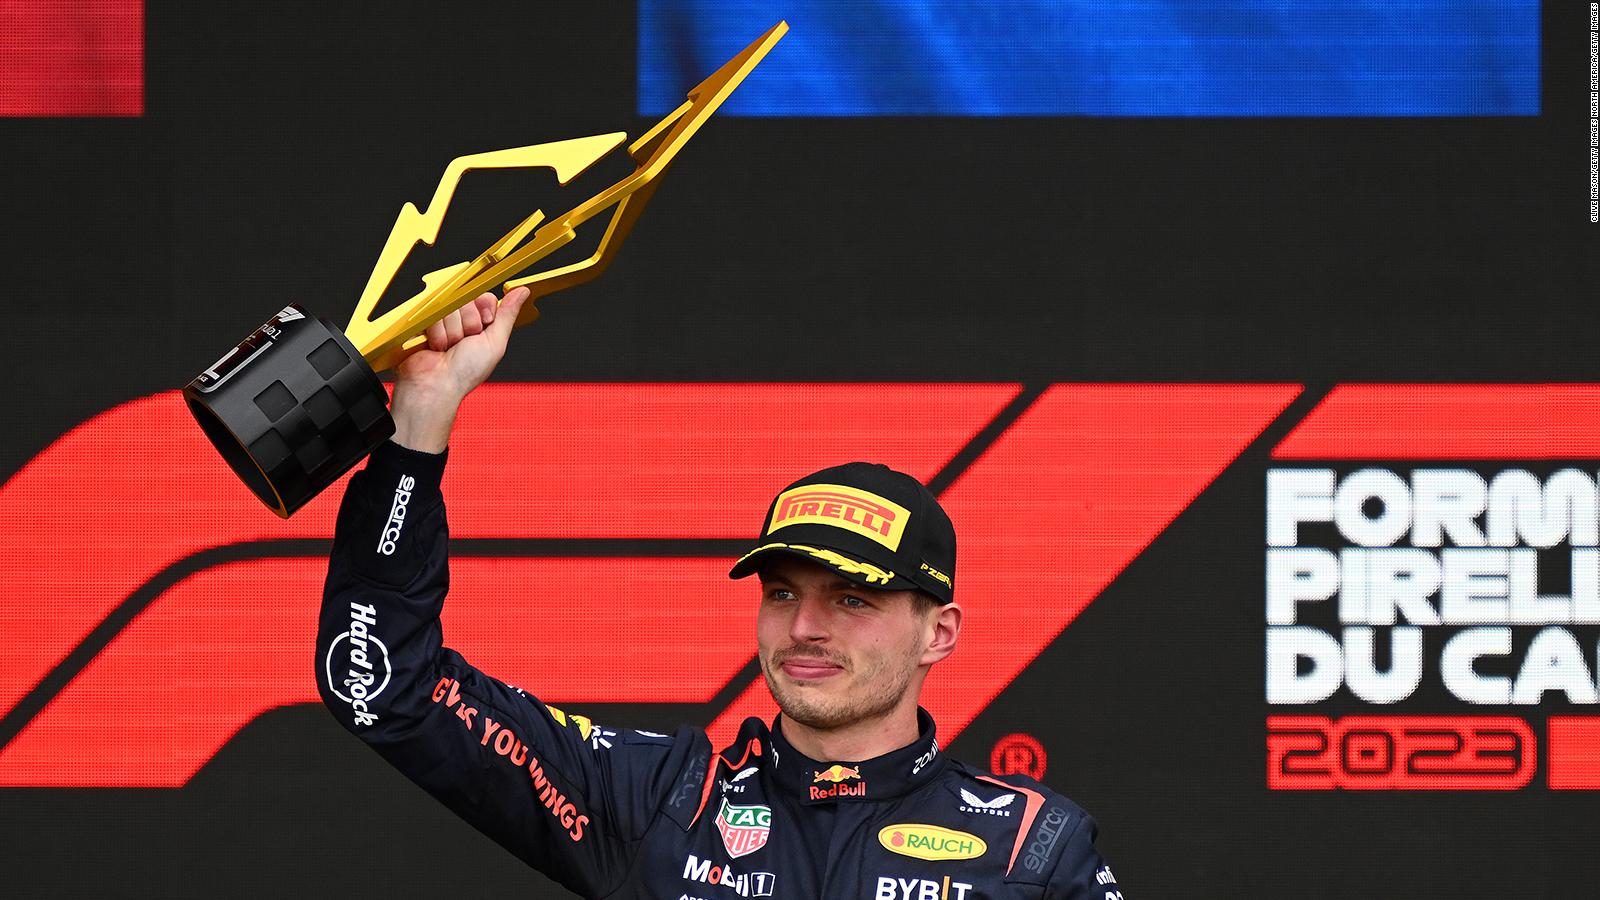 ¿Se perfila Max Verstappen rumbo a un nuevo título de la Fórmula 1?